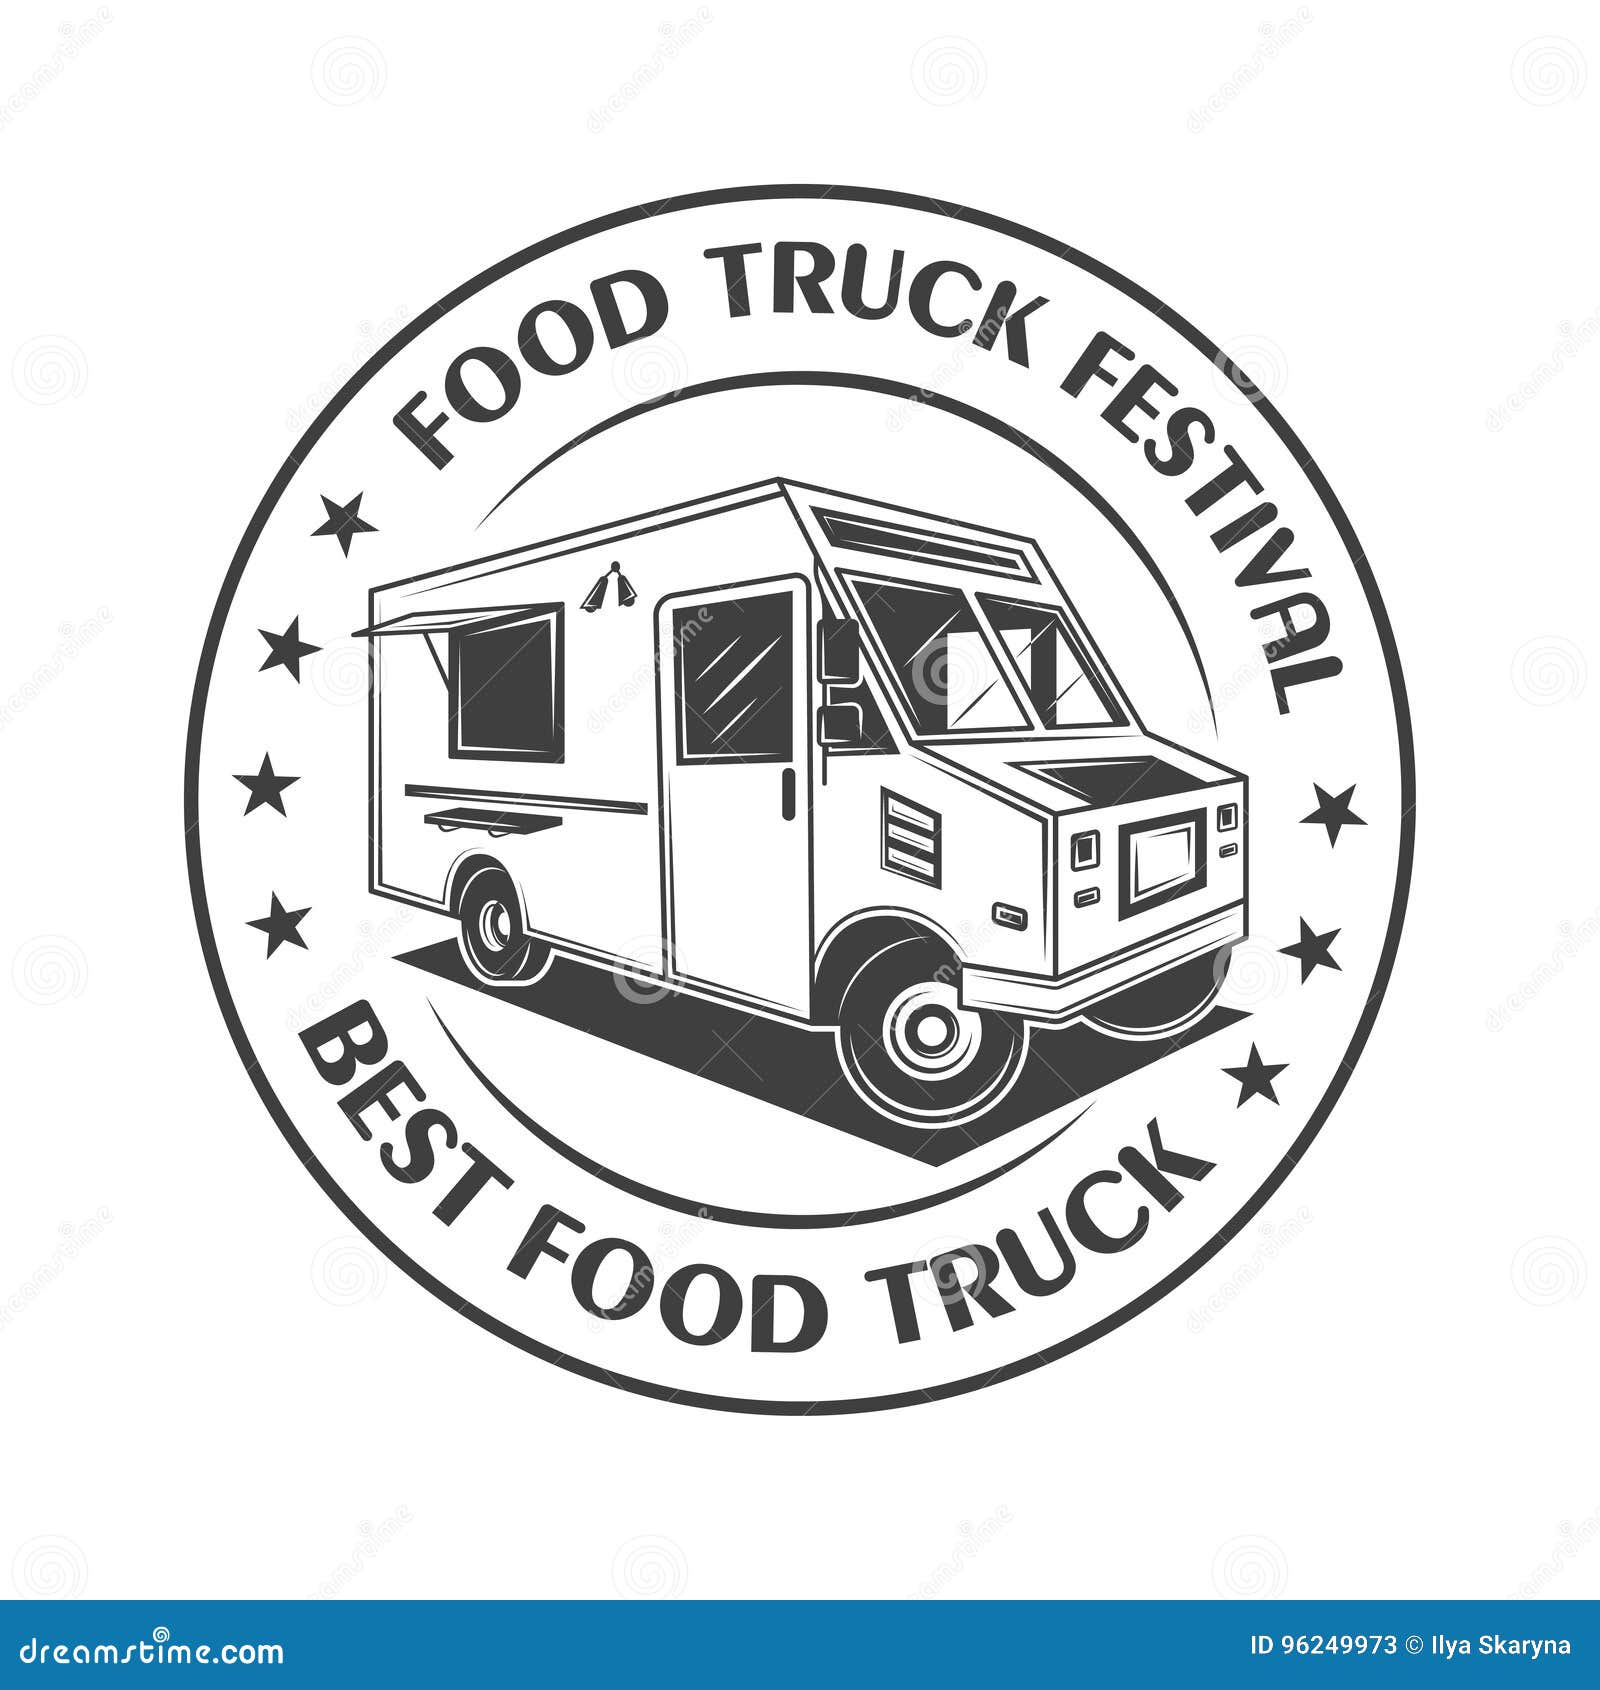 Food Truck Festival Vintage Logo,label, Badge, or Emblem in Monochrome ...